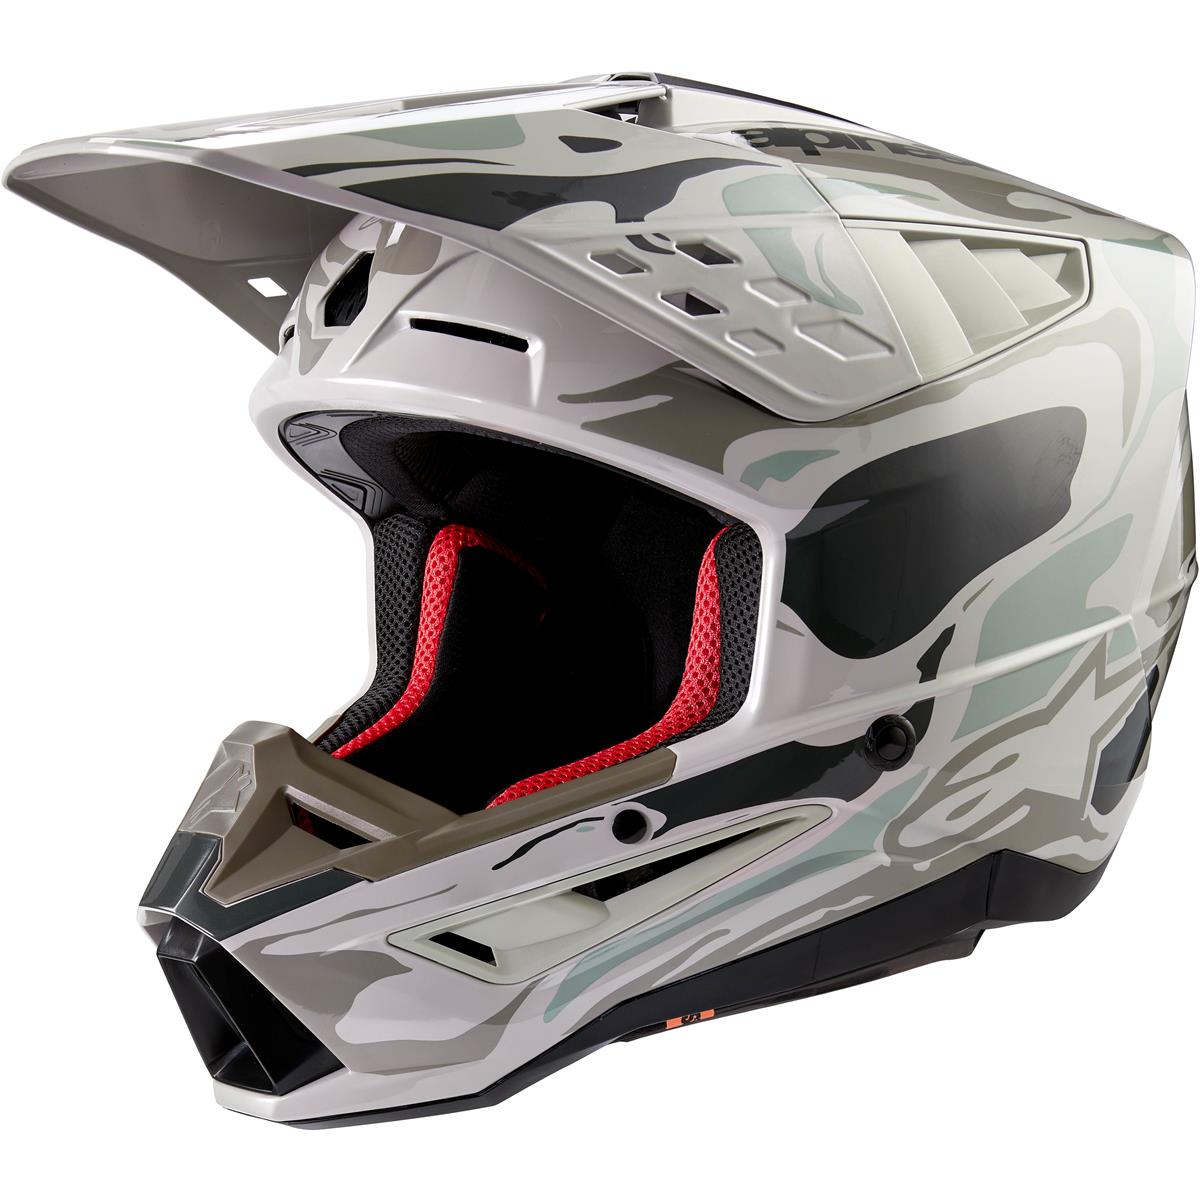 Alpinestars MX Helmet S-M5 Mineral - Warm Gray/Celadon Green/Glossy